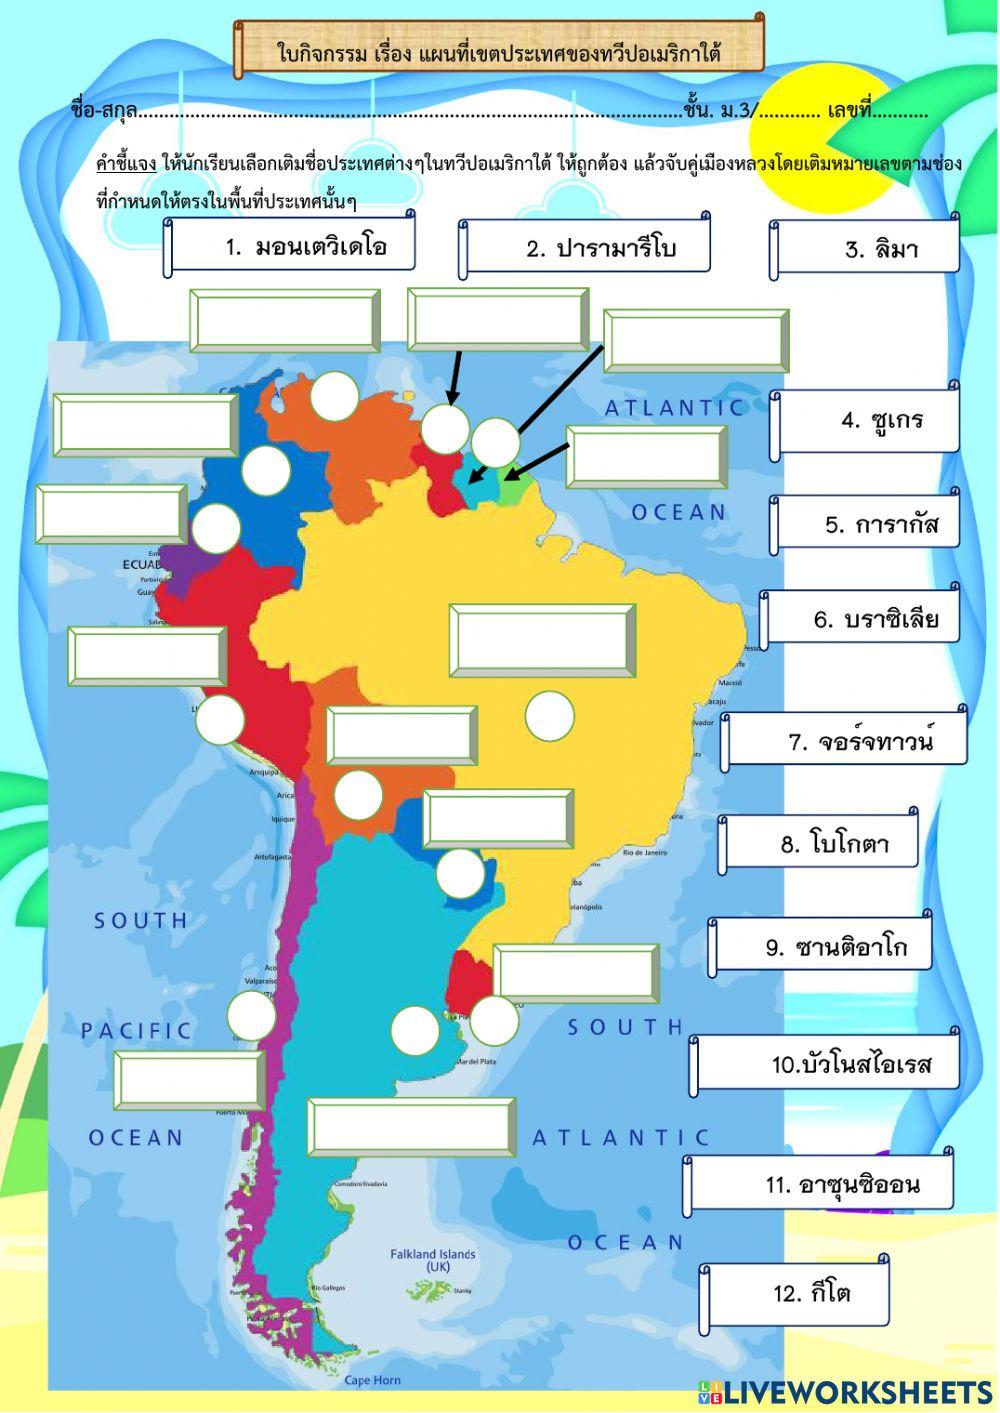 แผนที่ประเทศในทวีปอเมริกาใต้